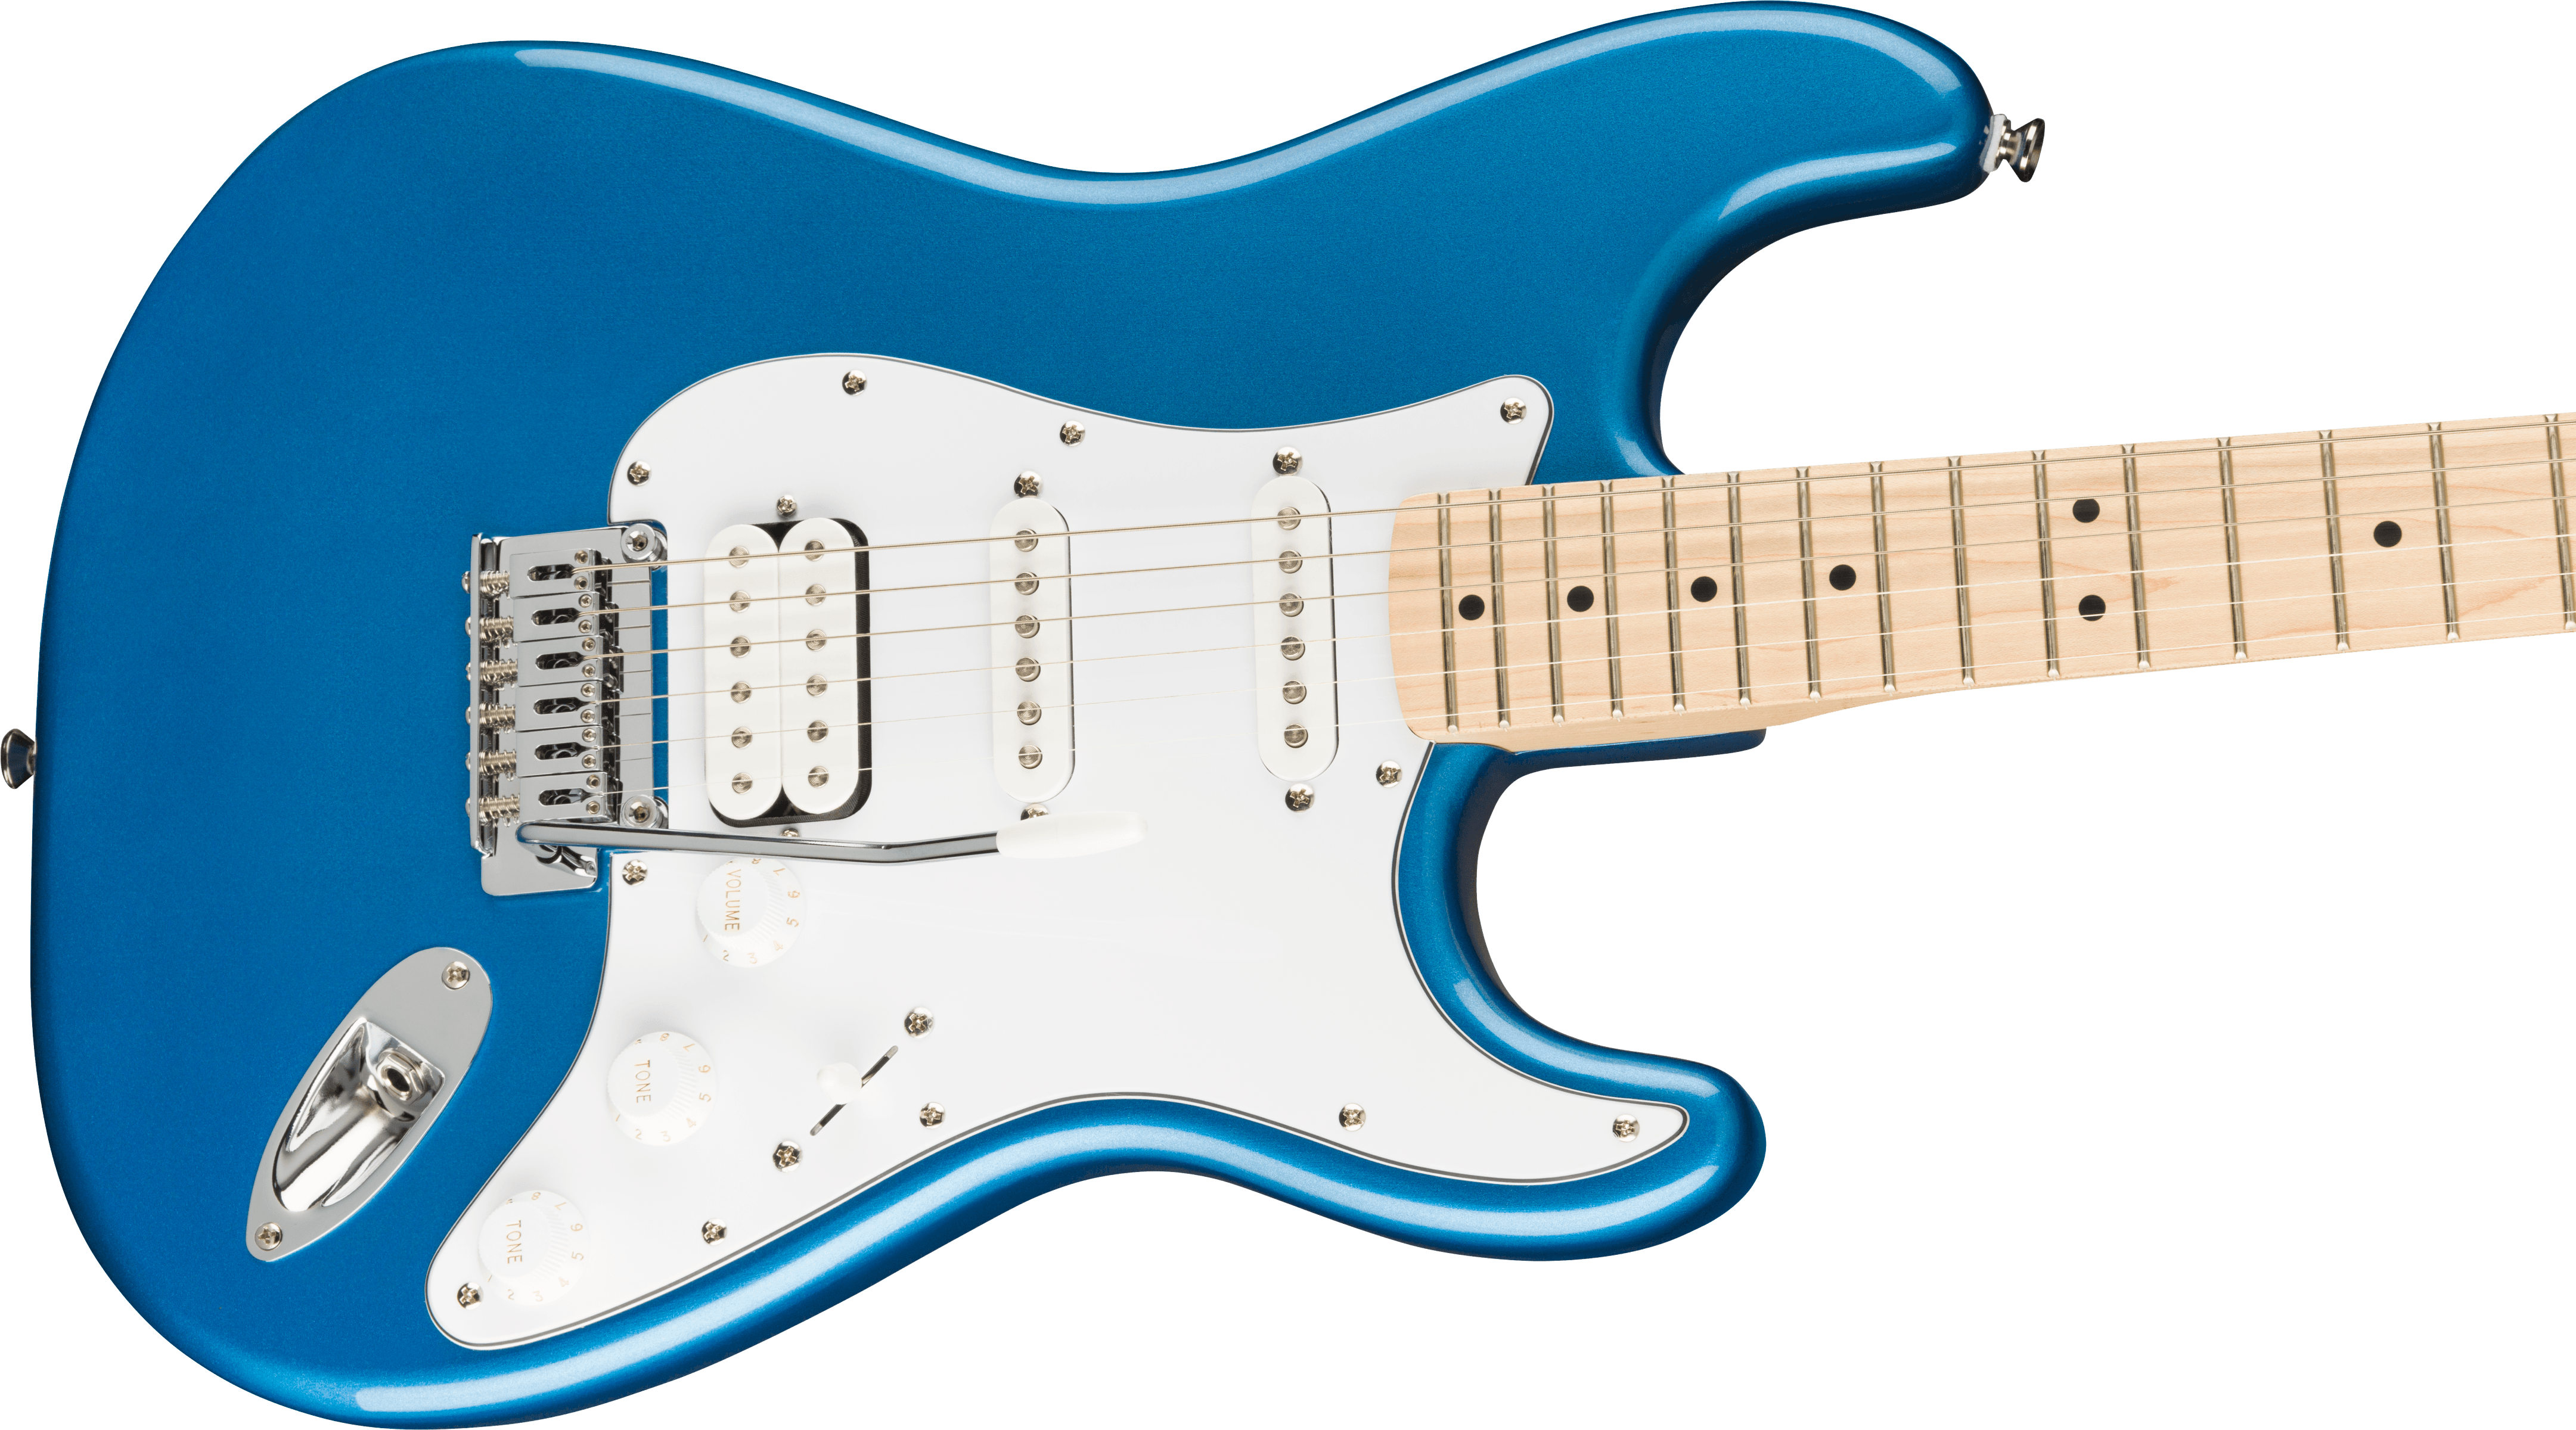 Squier Strat Affinity Hss Pack +fender Frontman 15g 2021 Trem Mn - Lake Placid Blue - Electric guitar set - Variation 3